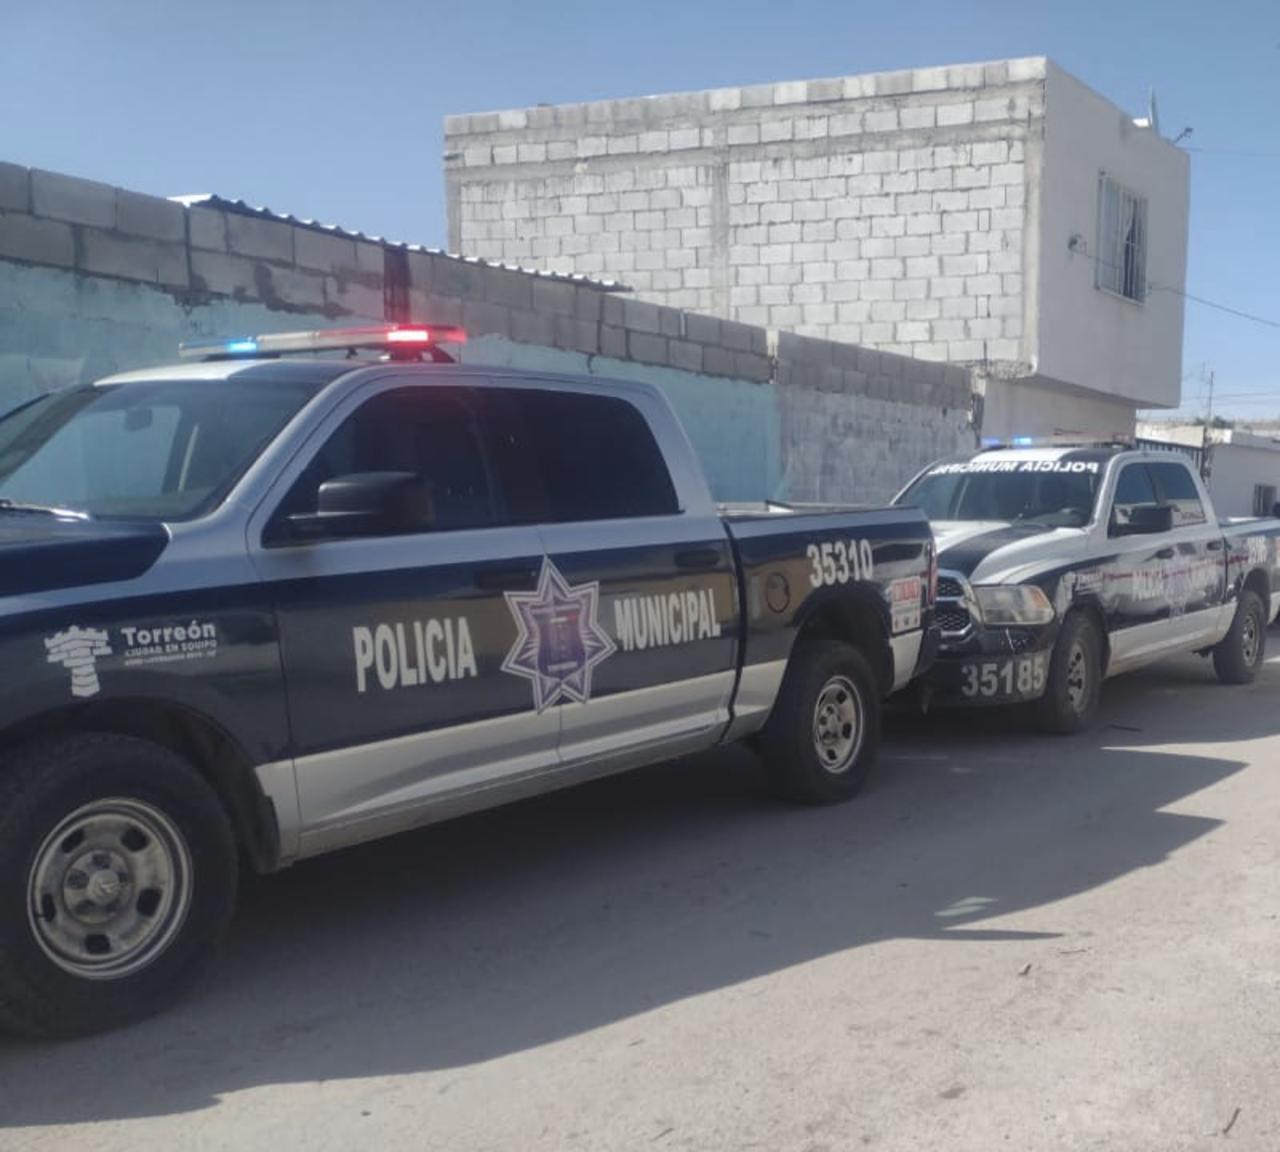 La Dirección de Seguridad Pública de Municipal, informó sobre la detención de dos sujetos que ingresaron a un domicilio en un fraccionamiento residencial de Torreón, donde perpetraron un cuantioso robo.